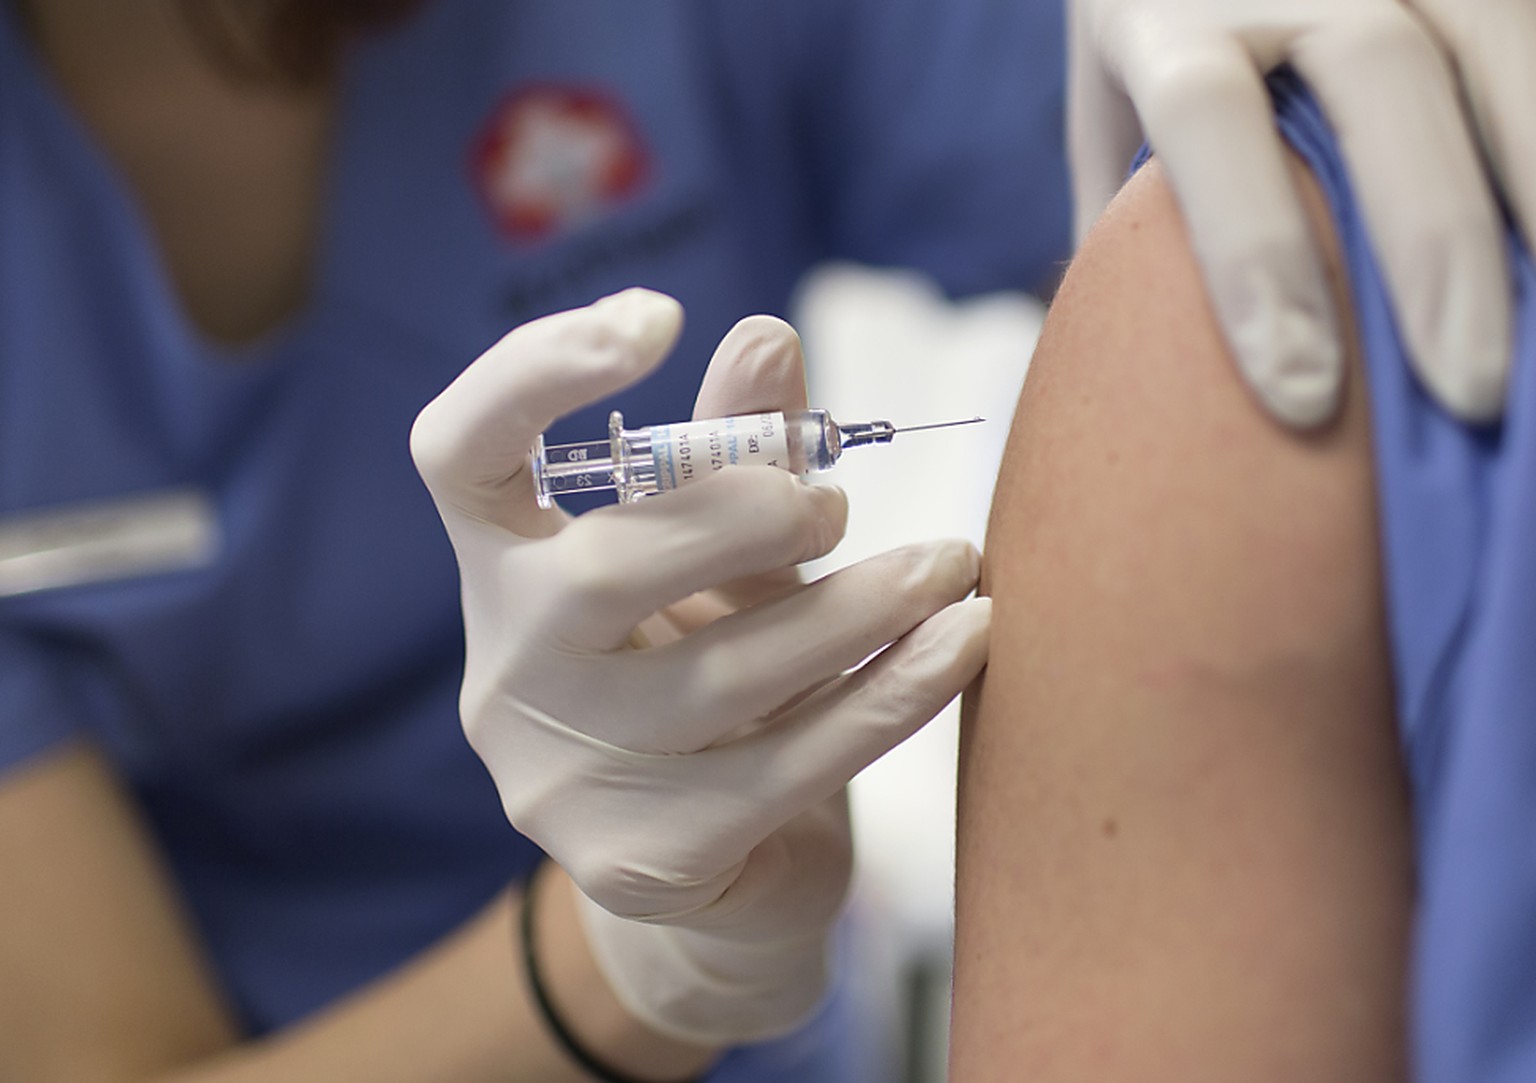 Das Bundesamt für Gesundheit (BAG) führt gemeinsam mit Partnern am 8. November einen nationalen Impftag gegen Grippe durch. (Symbolbild)